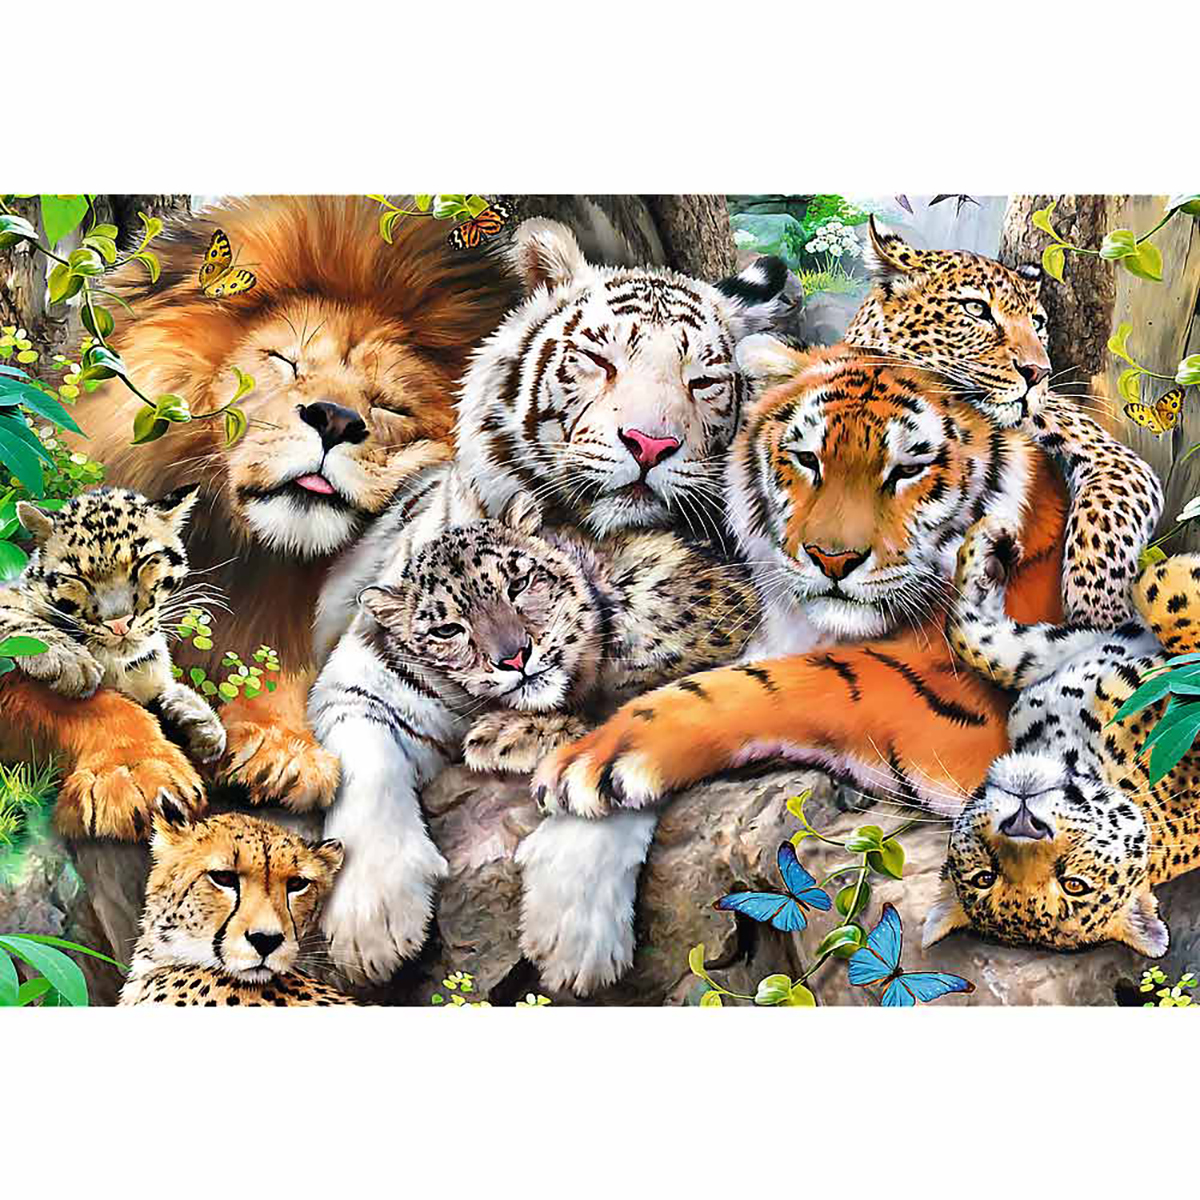 TREFL Wildkatzen Puzzle Dschungel im